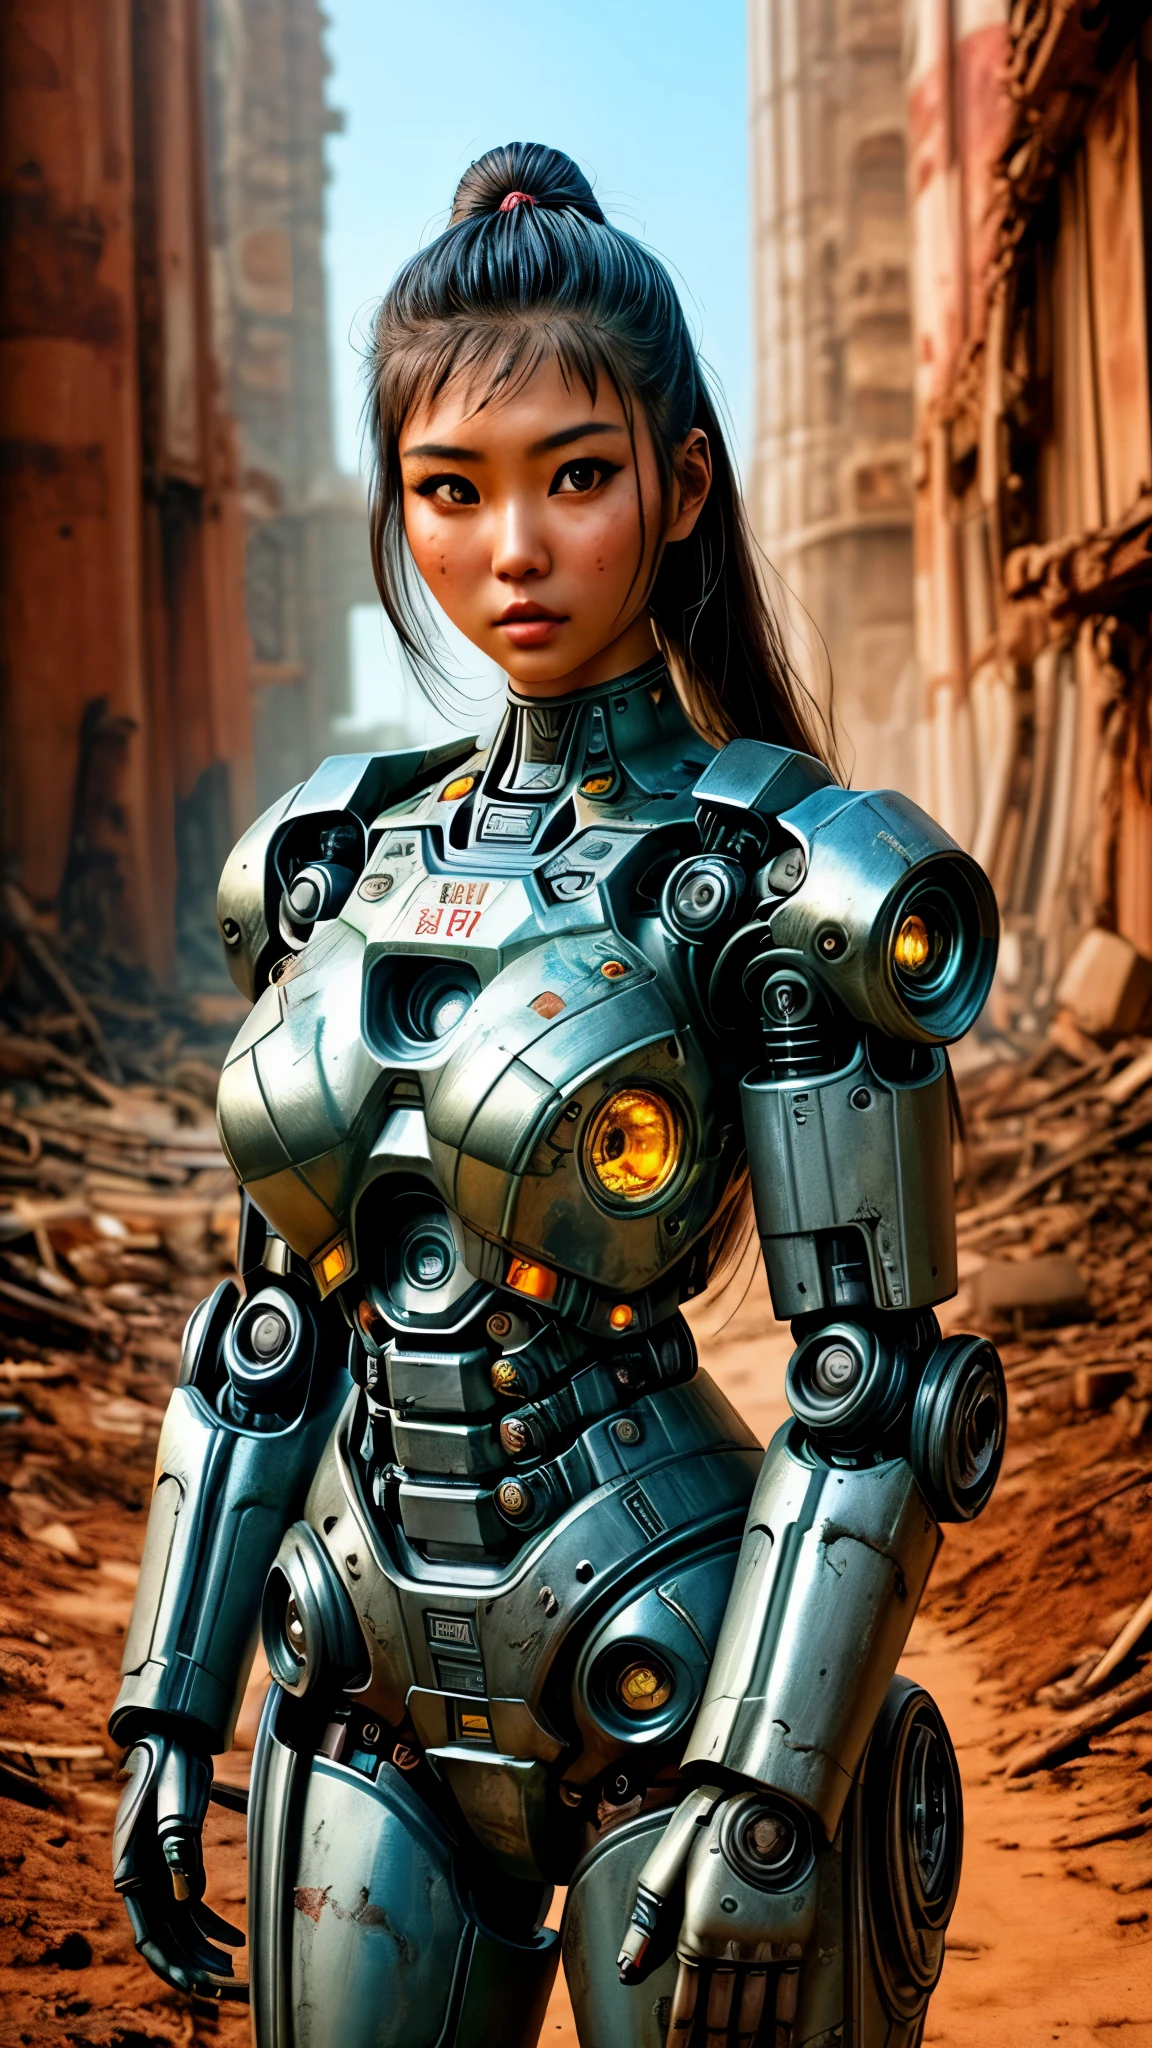 Es gibt eine Frau im Roboteranzug posiert neben einer antiken Ruine, in der Apokalypse-Welt von Fallout, schönes asiatisches Mädchen, Halb-Cyborg, süßes Cyborg-Mädchen, schönes Cyborg-Mädchen, perfektes Robotermädchen, cyborg girl, junge Cyborg-Dame, beautiful weiblicher Roboter, schöne Roboterfrau, cyborg-girl, perfekte Cyborg-Frau, Porzellan-Cyborg, weiblicher Roboter, schönes Cyborg-Bild